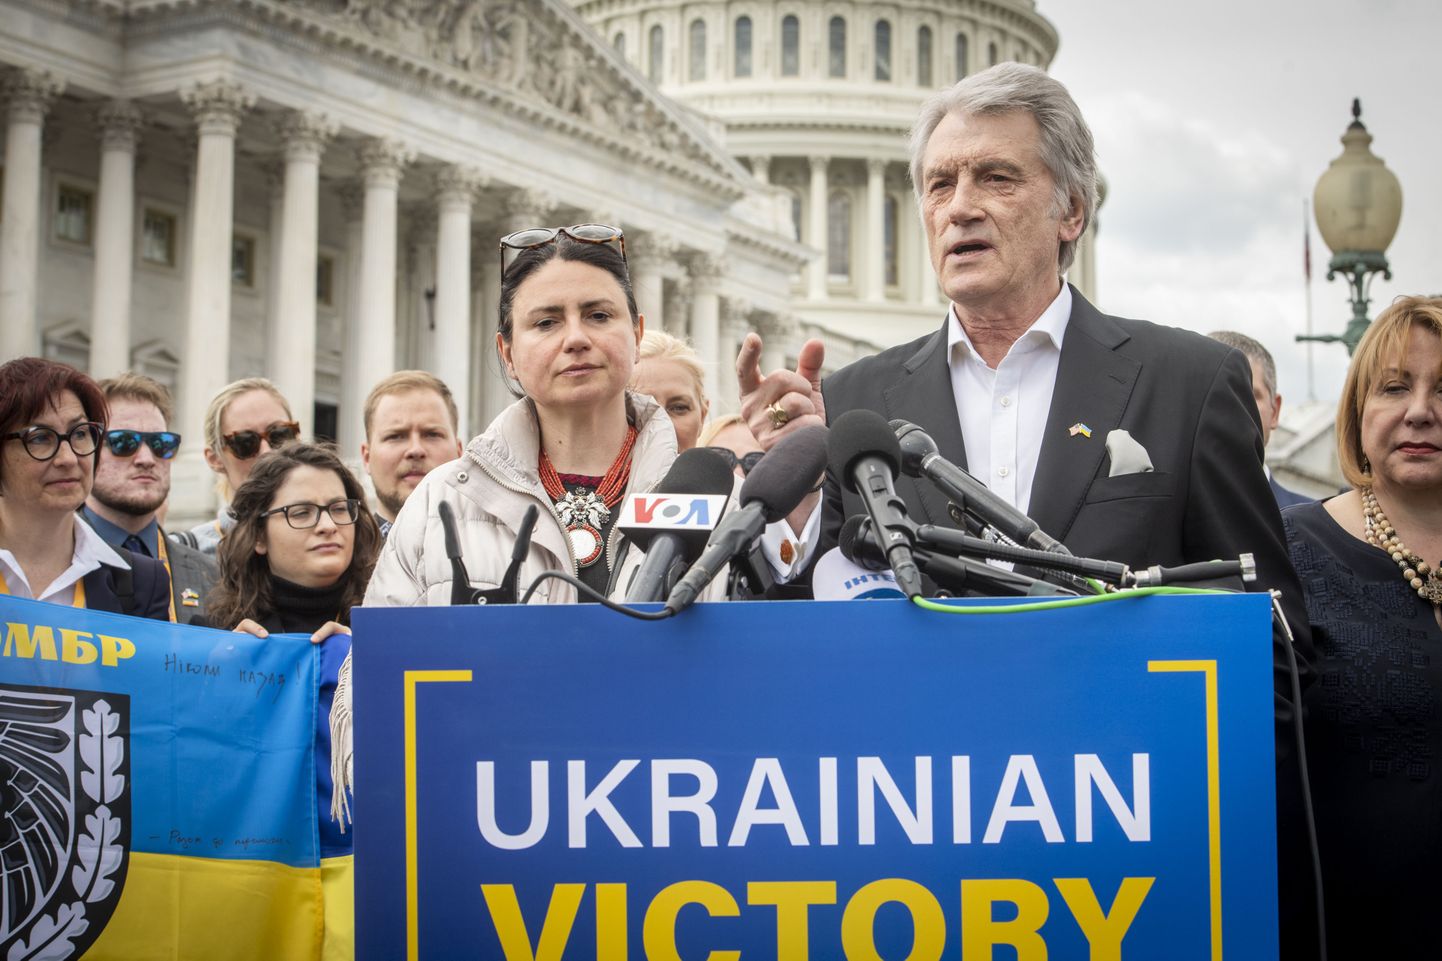 Бывший президент Украины Виктор Ющенко на пресс-конференции в Вашинтоне. 25 апреля 2023 года.